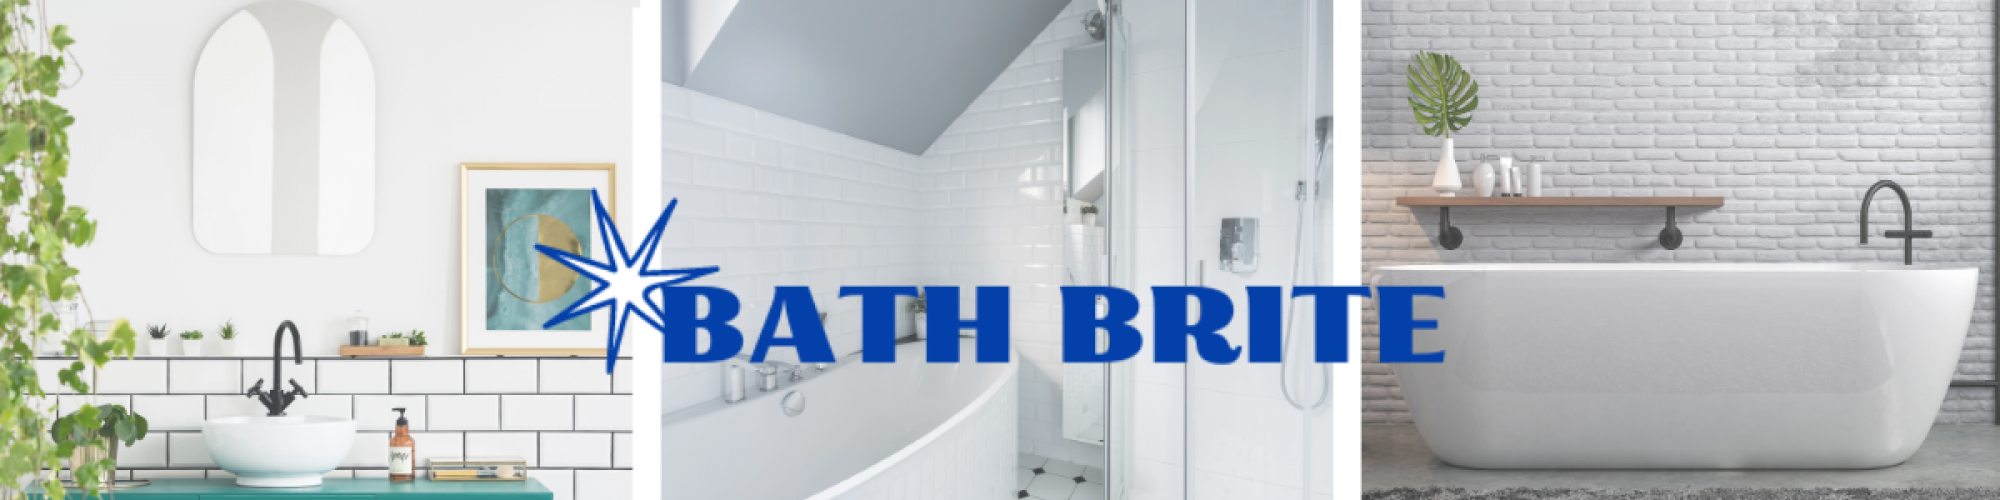 Bath Brite